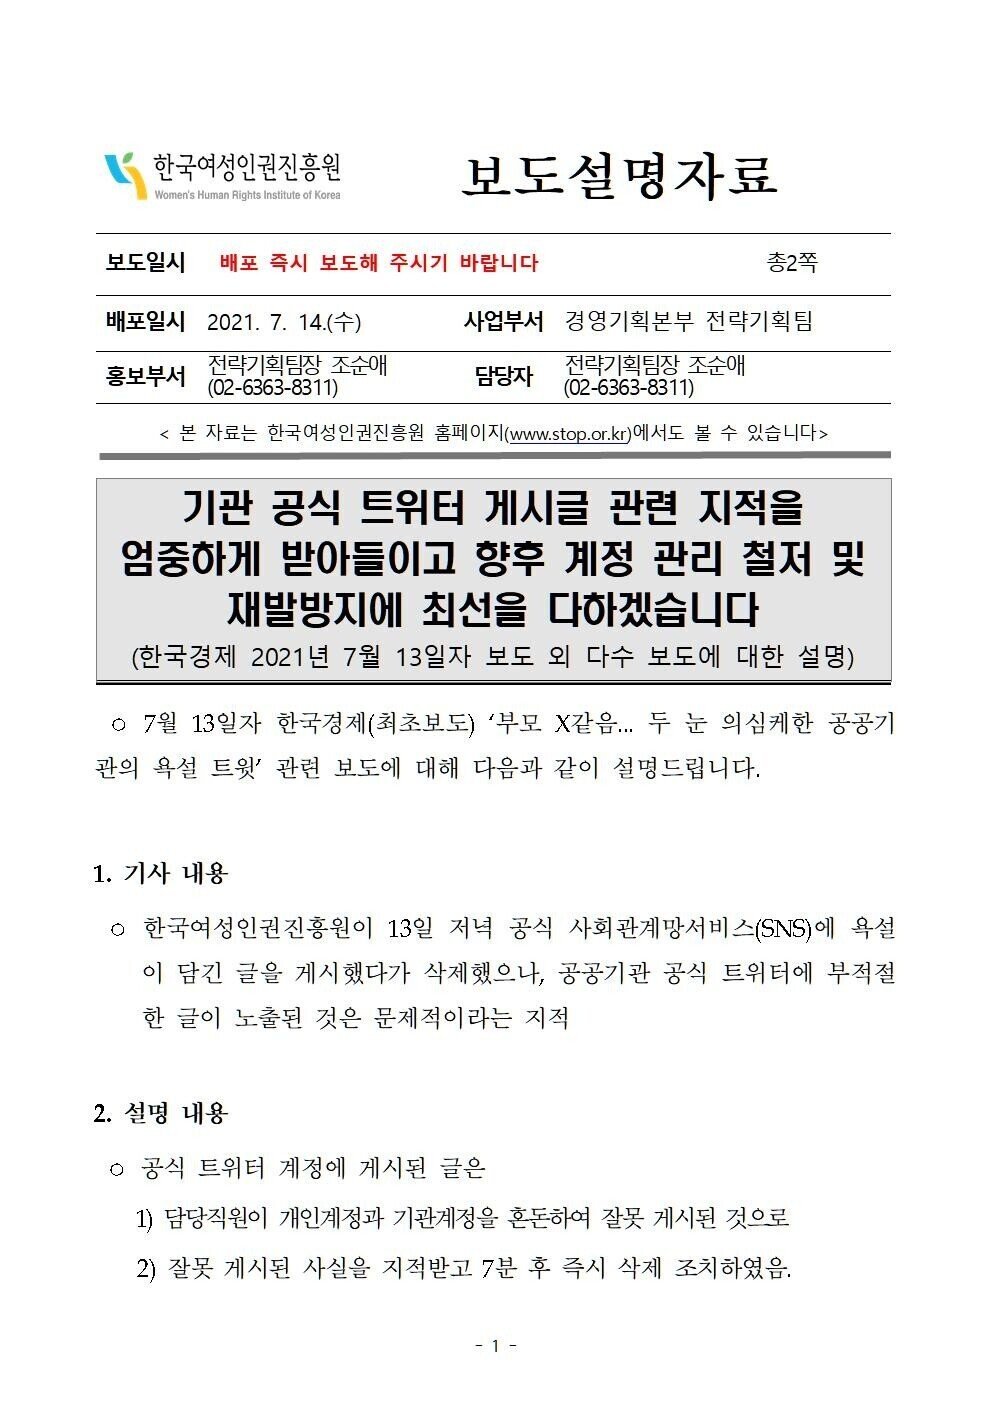 진흥원 한국 여성 트위터 인권 여가부, '트위터